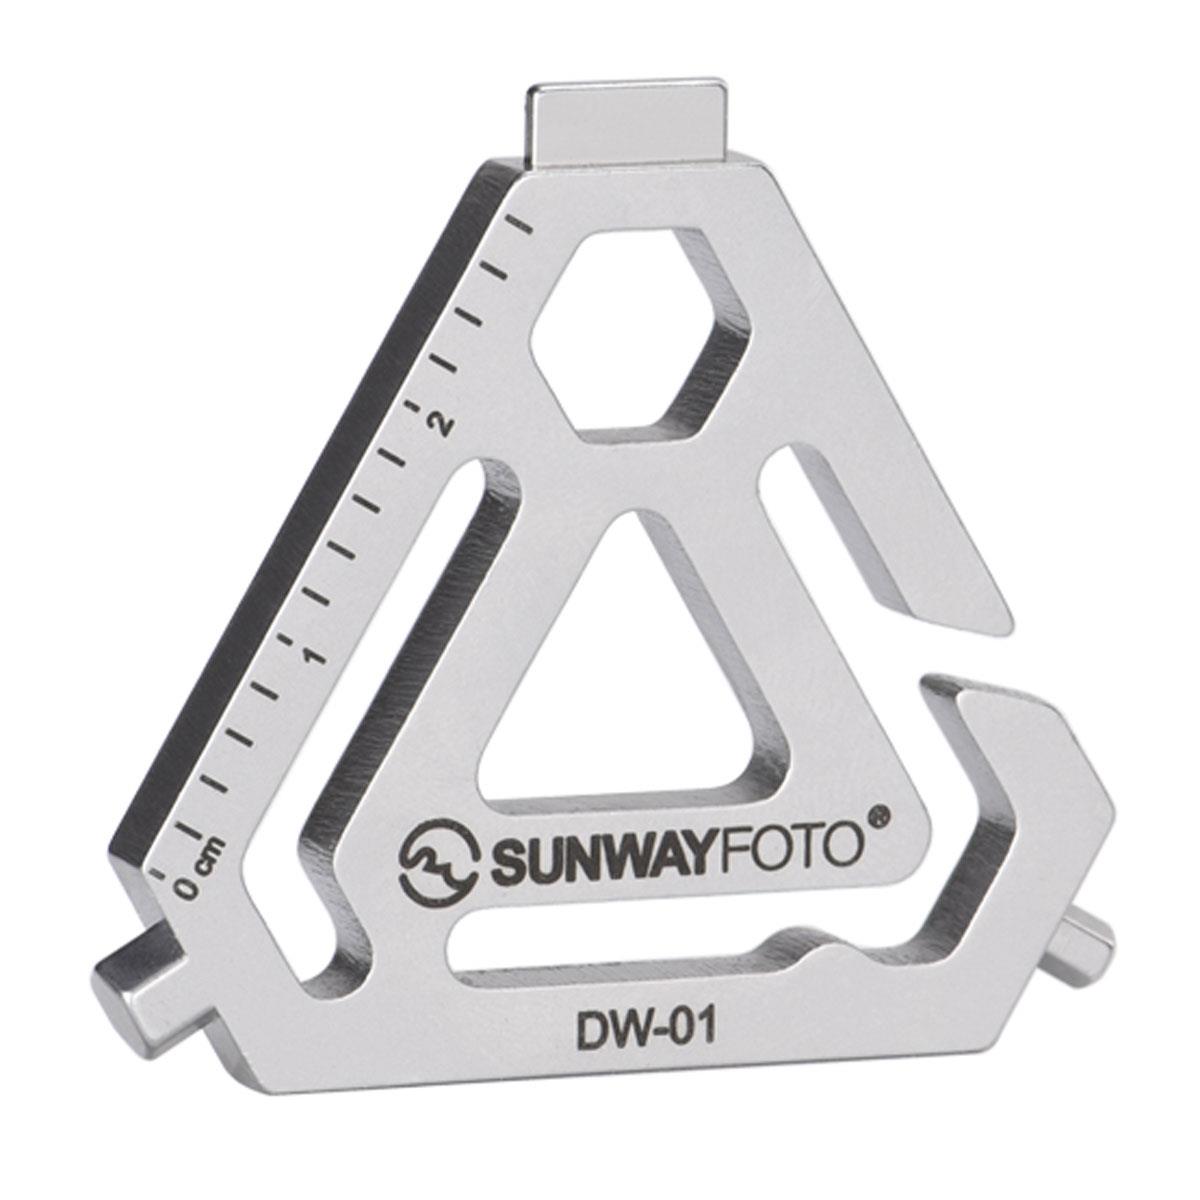 Image of SunwayFoto Sunwayfoto DW-01 EDC Tool Hex Wrench